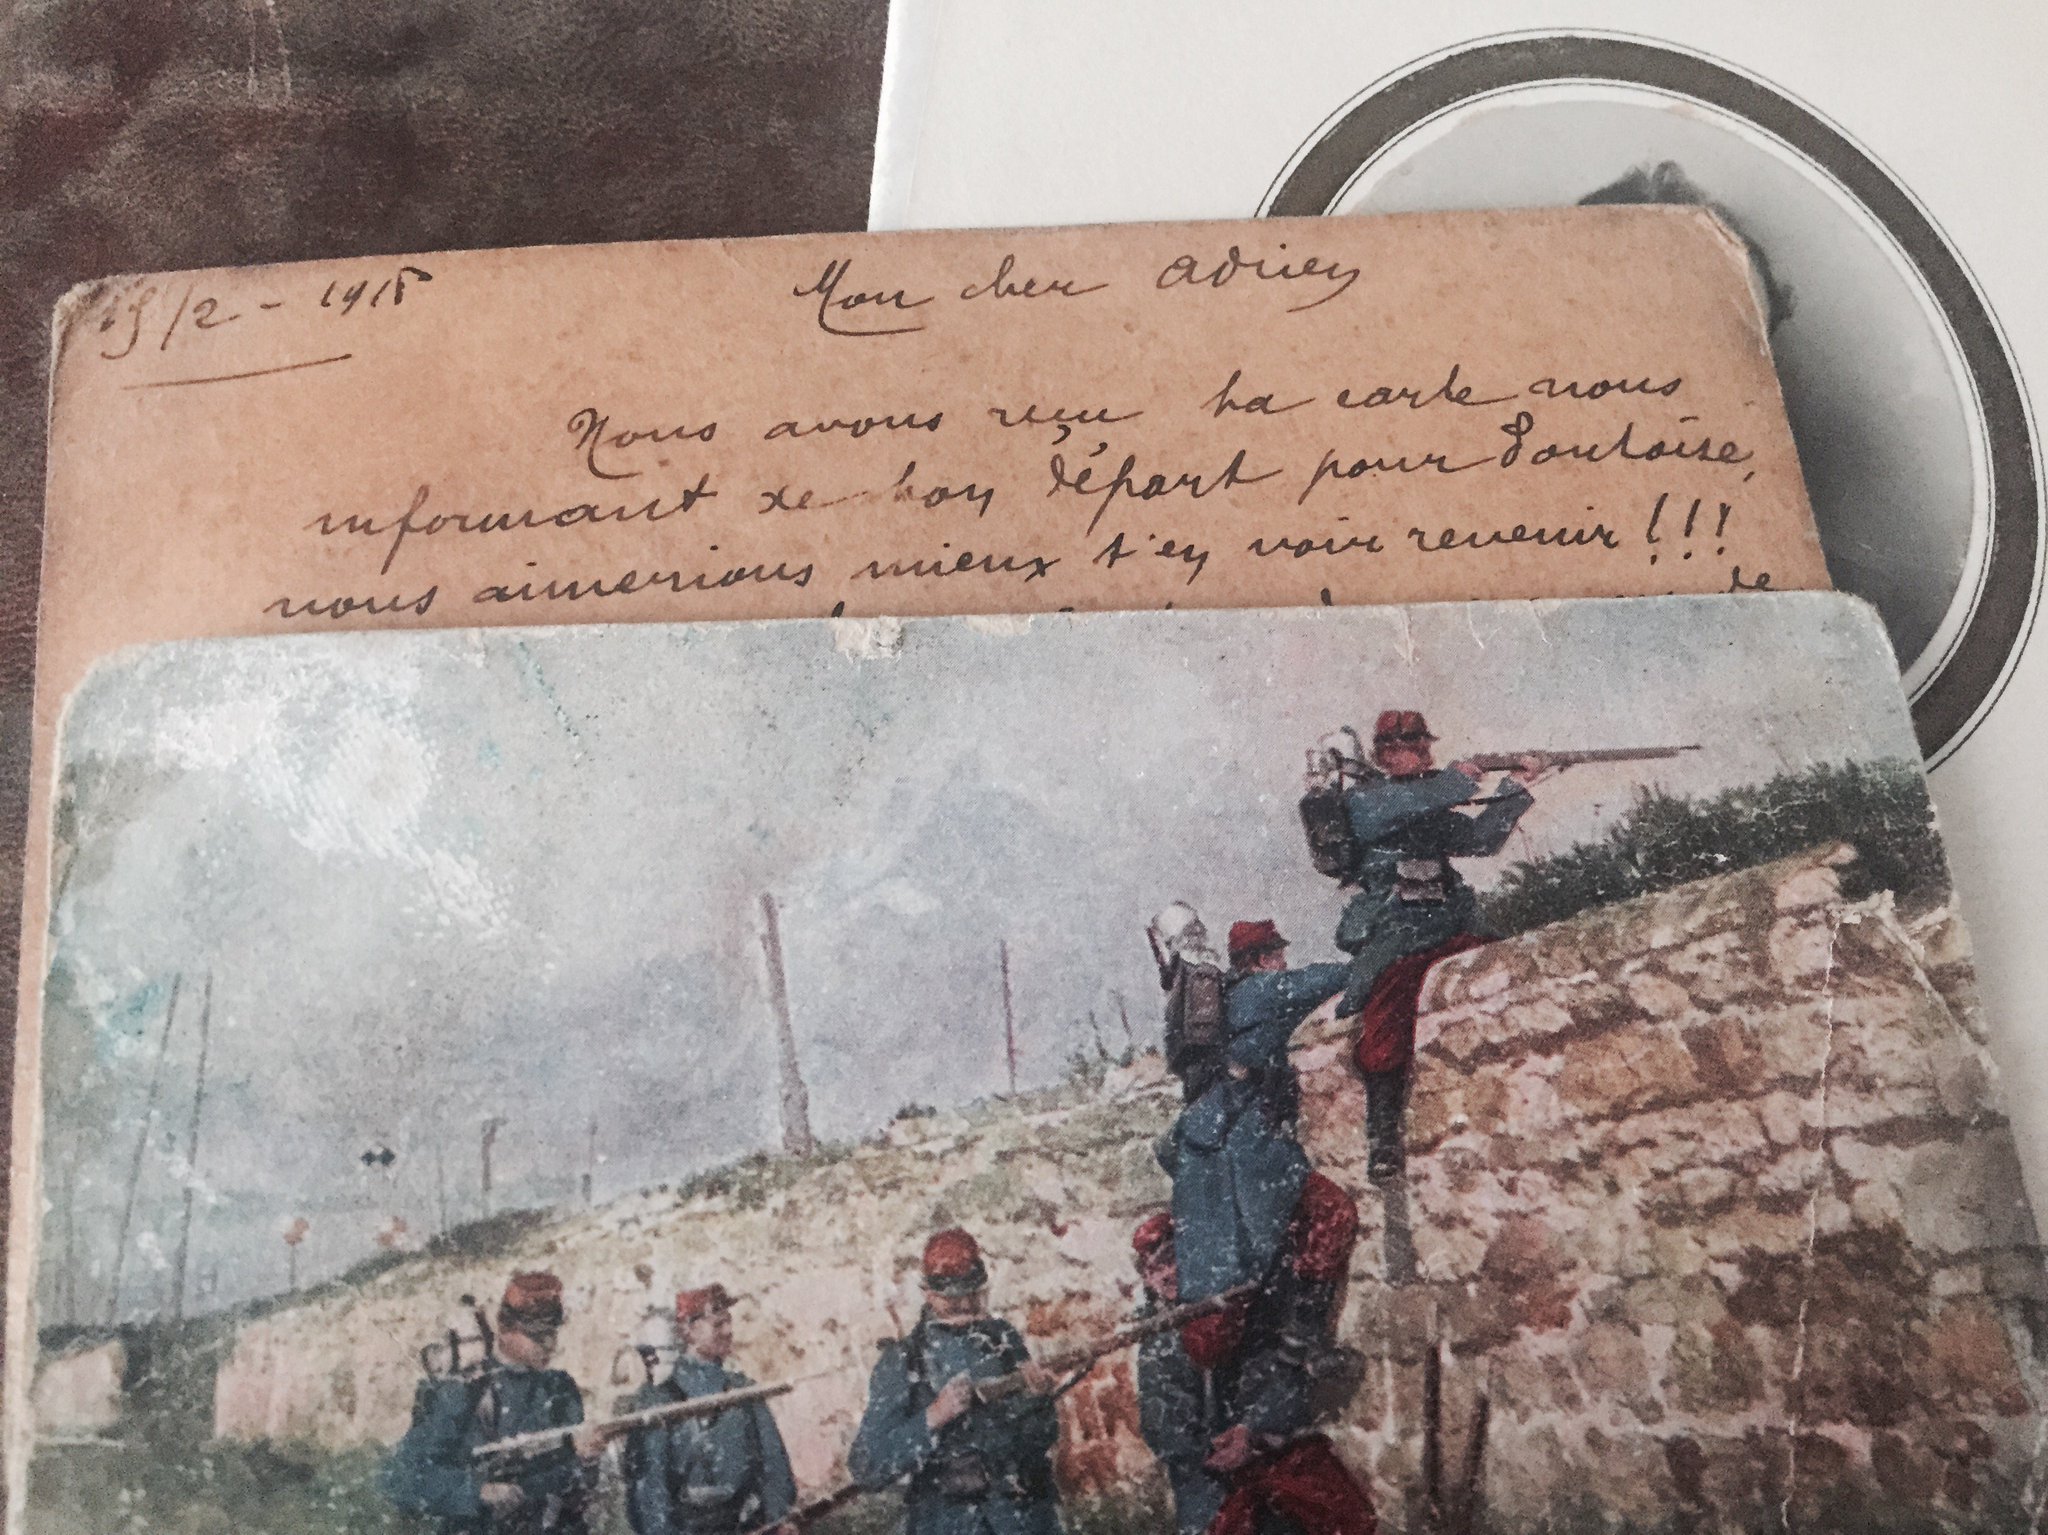 Il y a des cartes postales qui lui sont adressées au front en 1916 : "Nous aimerions mieux t'en voir revenir !!!" https://t.co/IE6UjShqnS